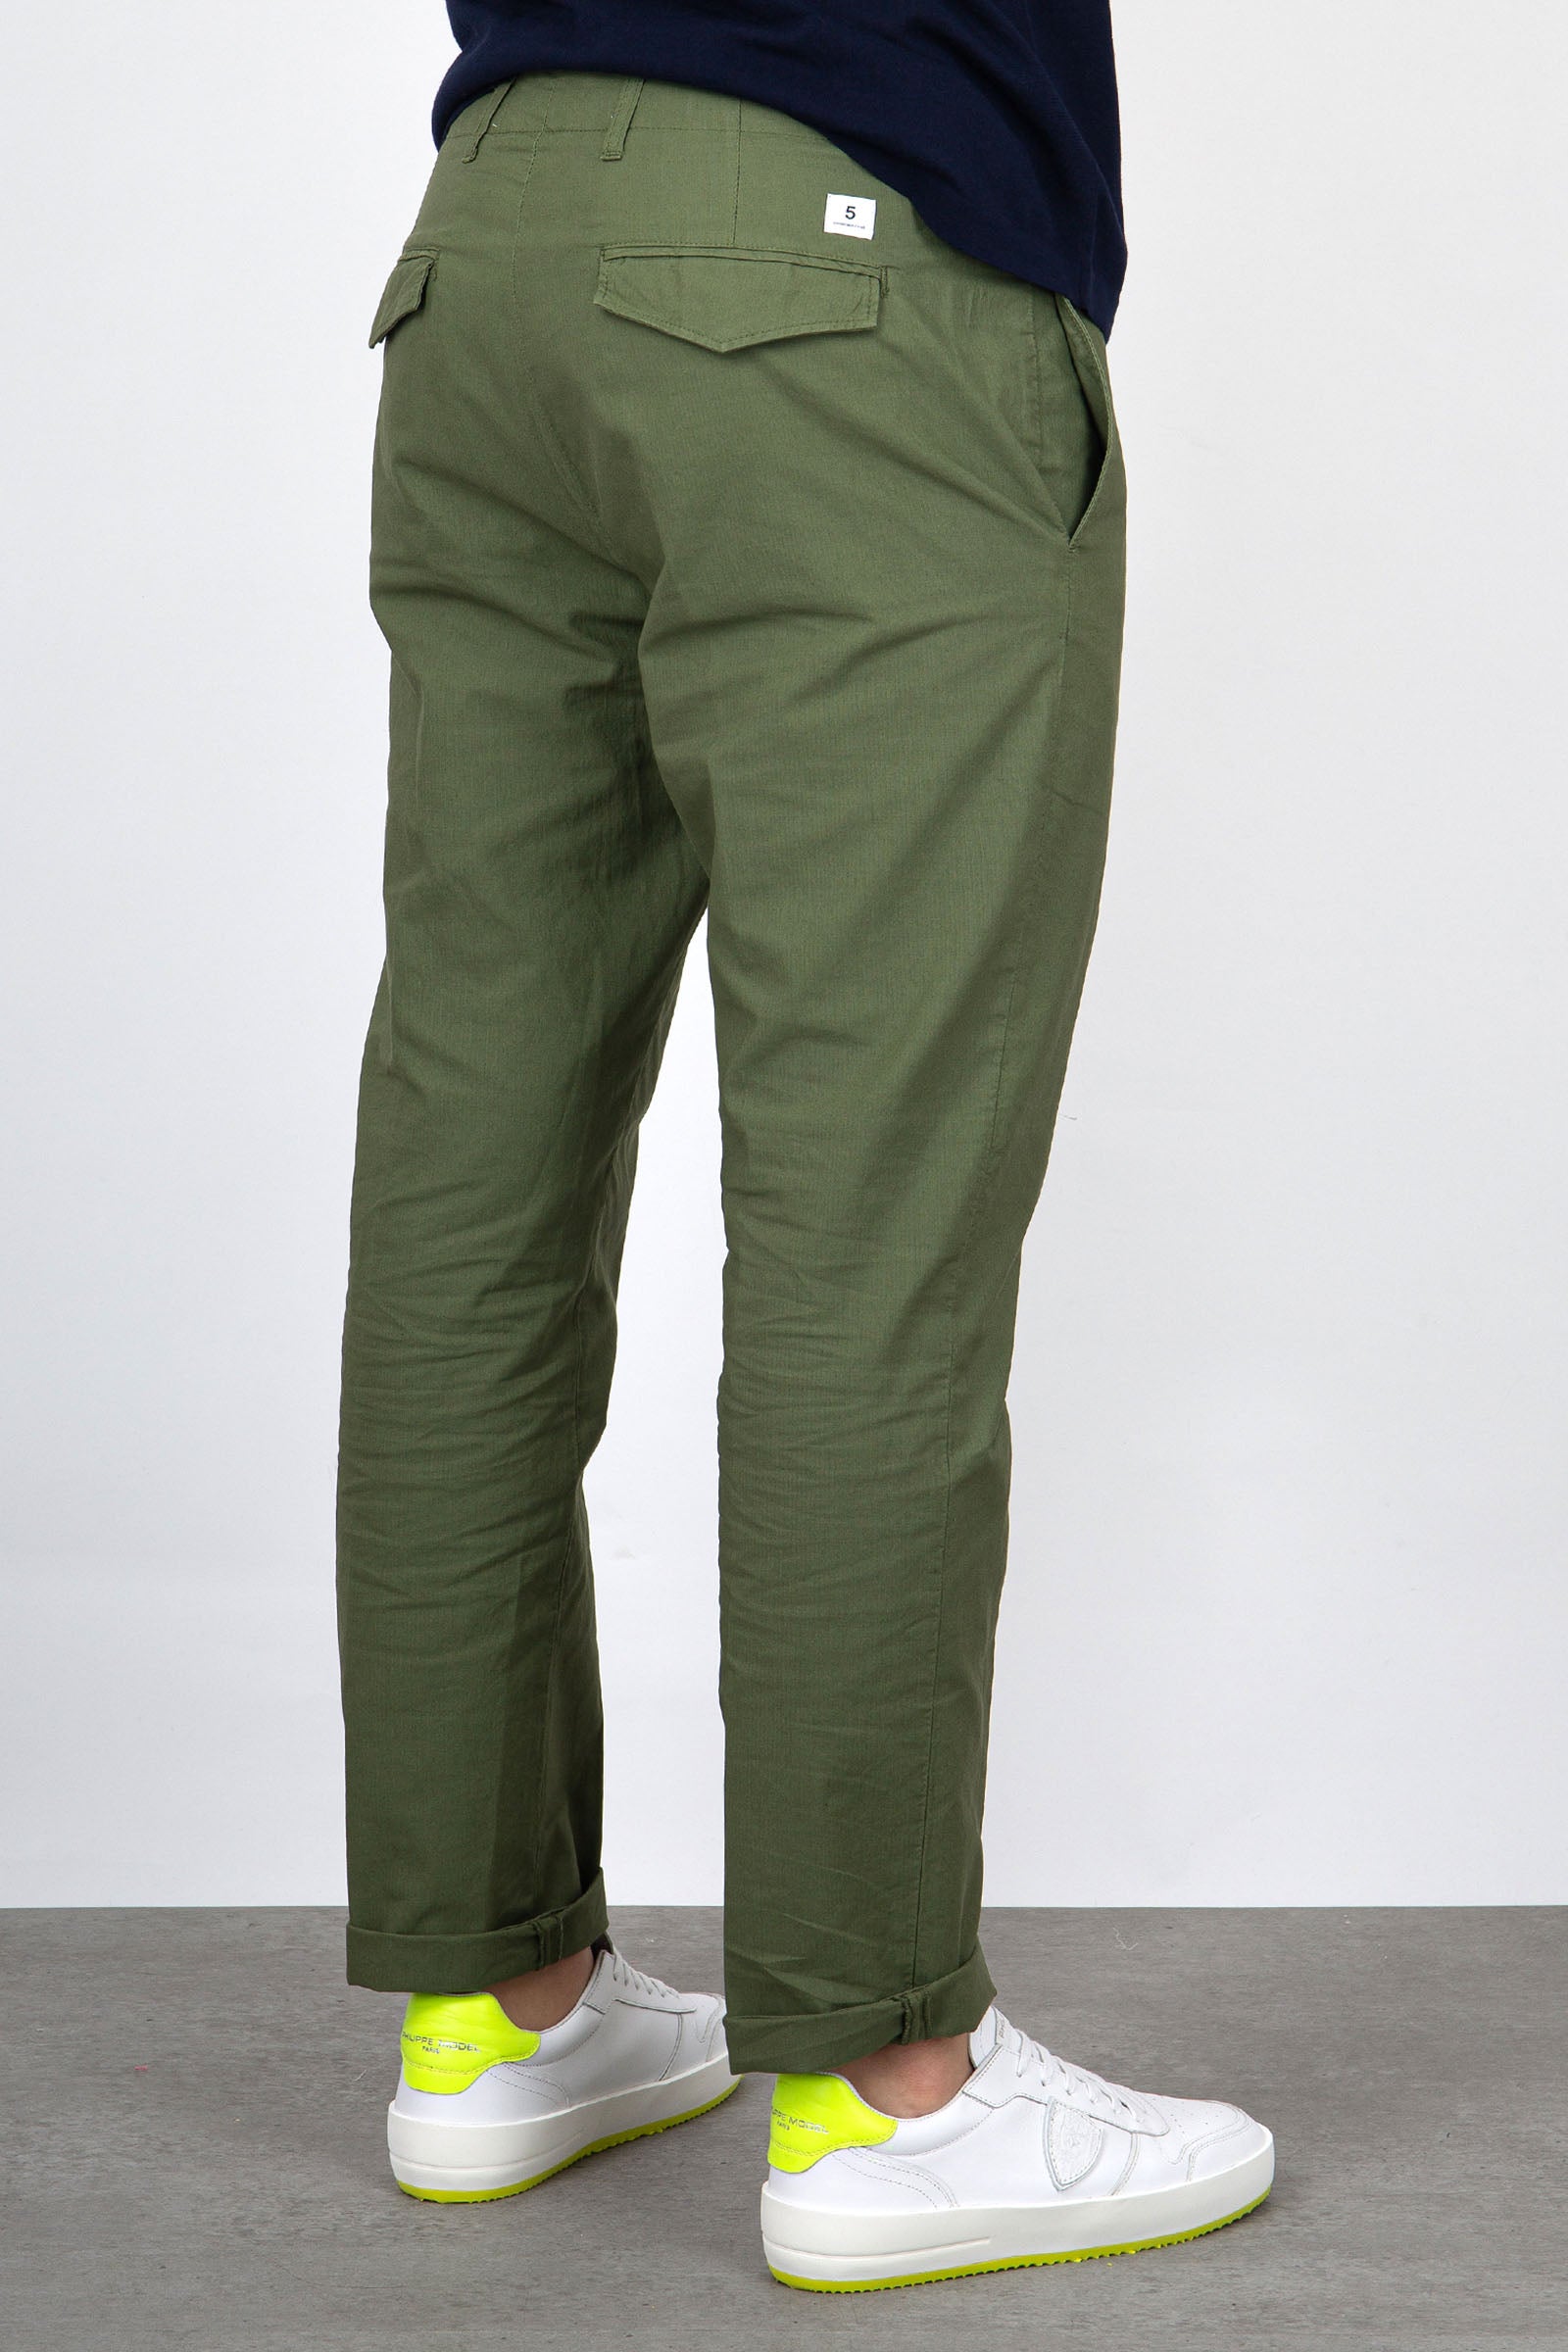 Department Five Pantalone Cotone Verde Militare - 5